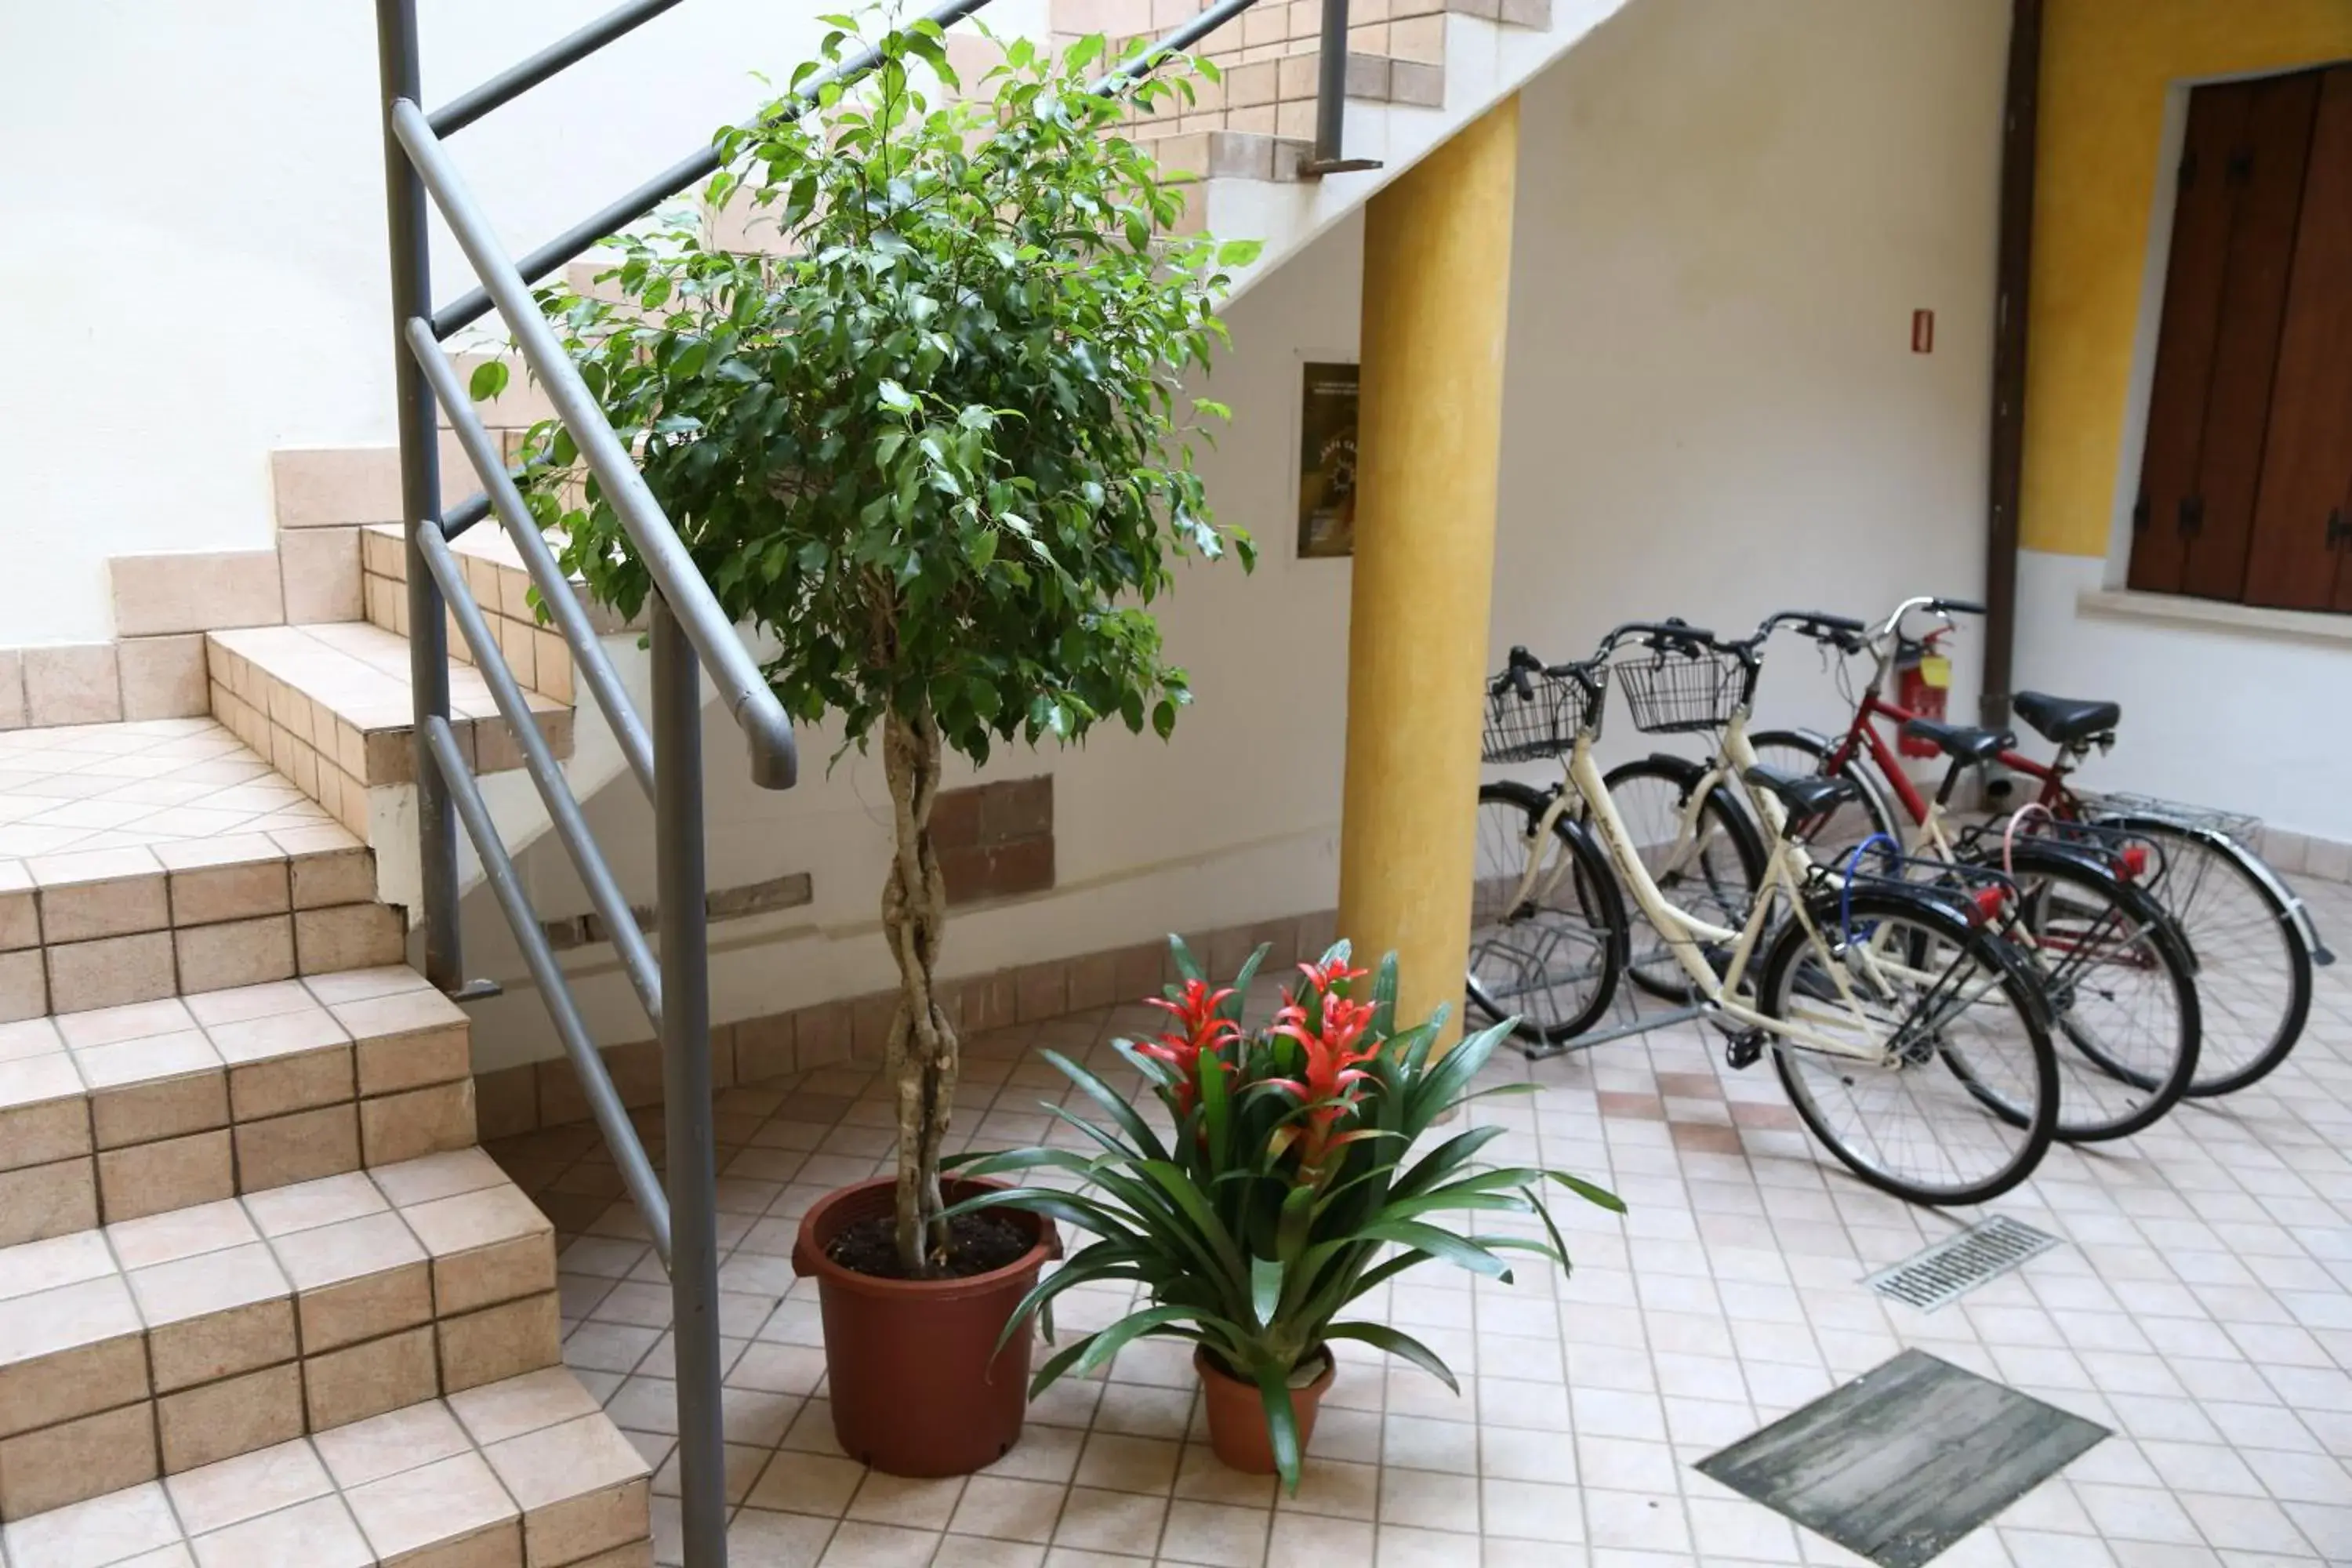 Area and facilities in Hotel Mantegna Stazione